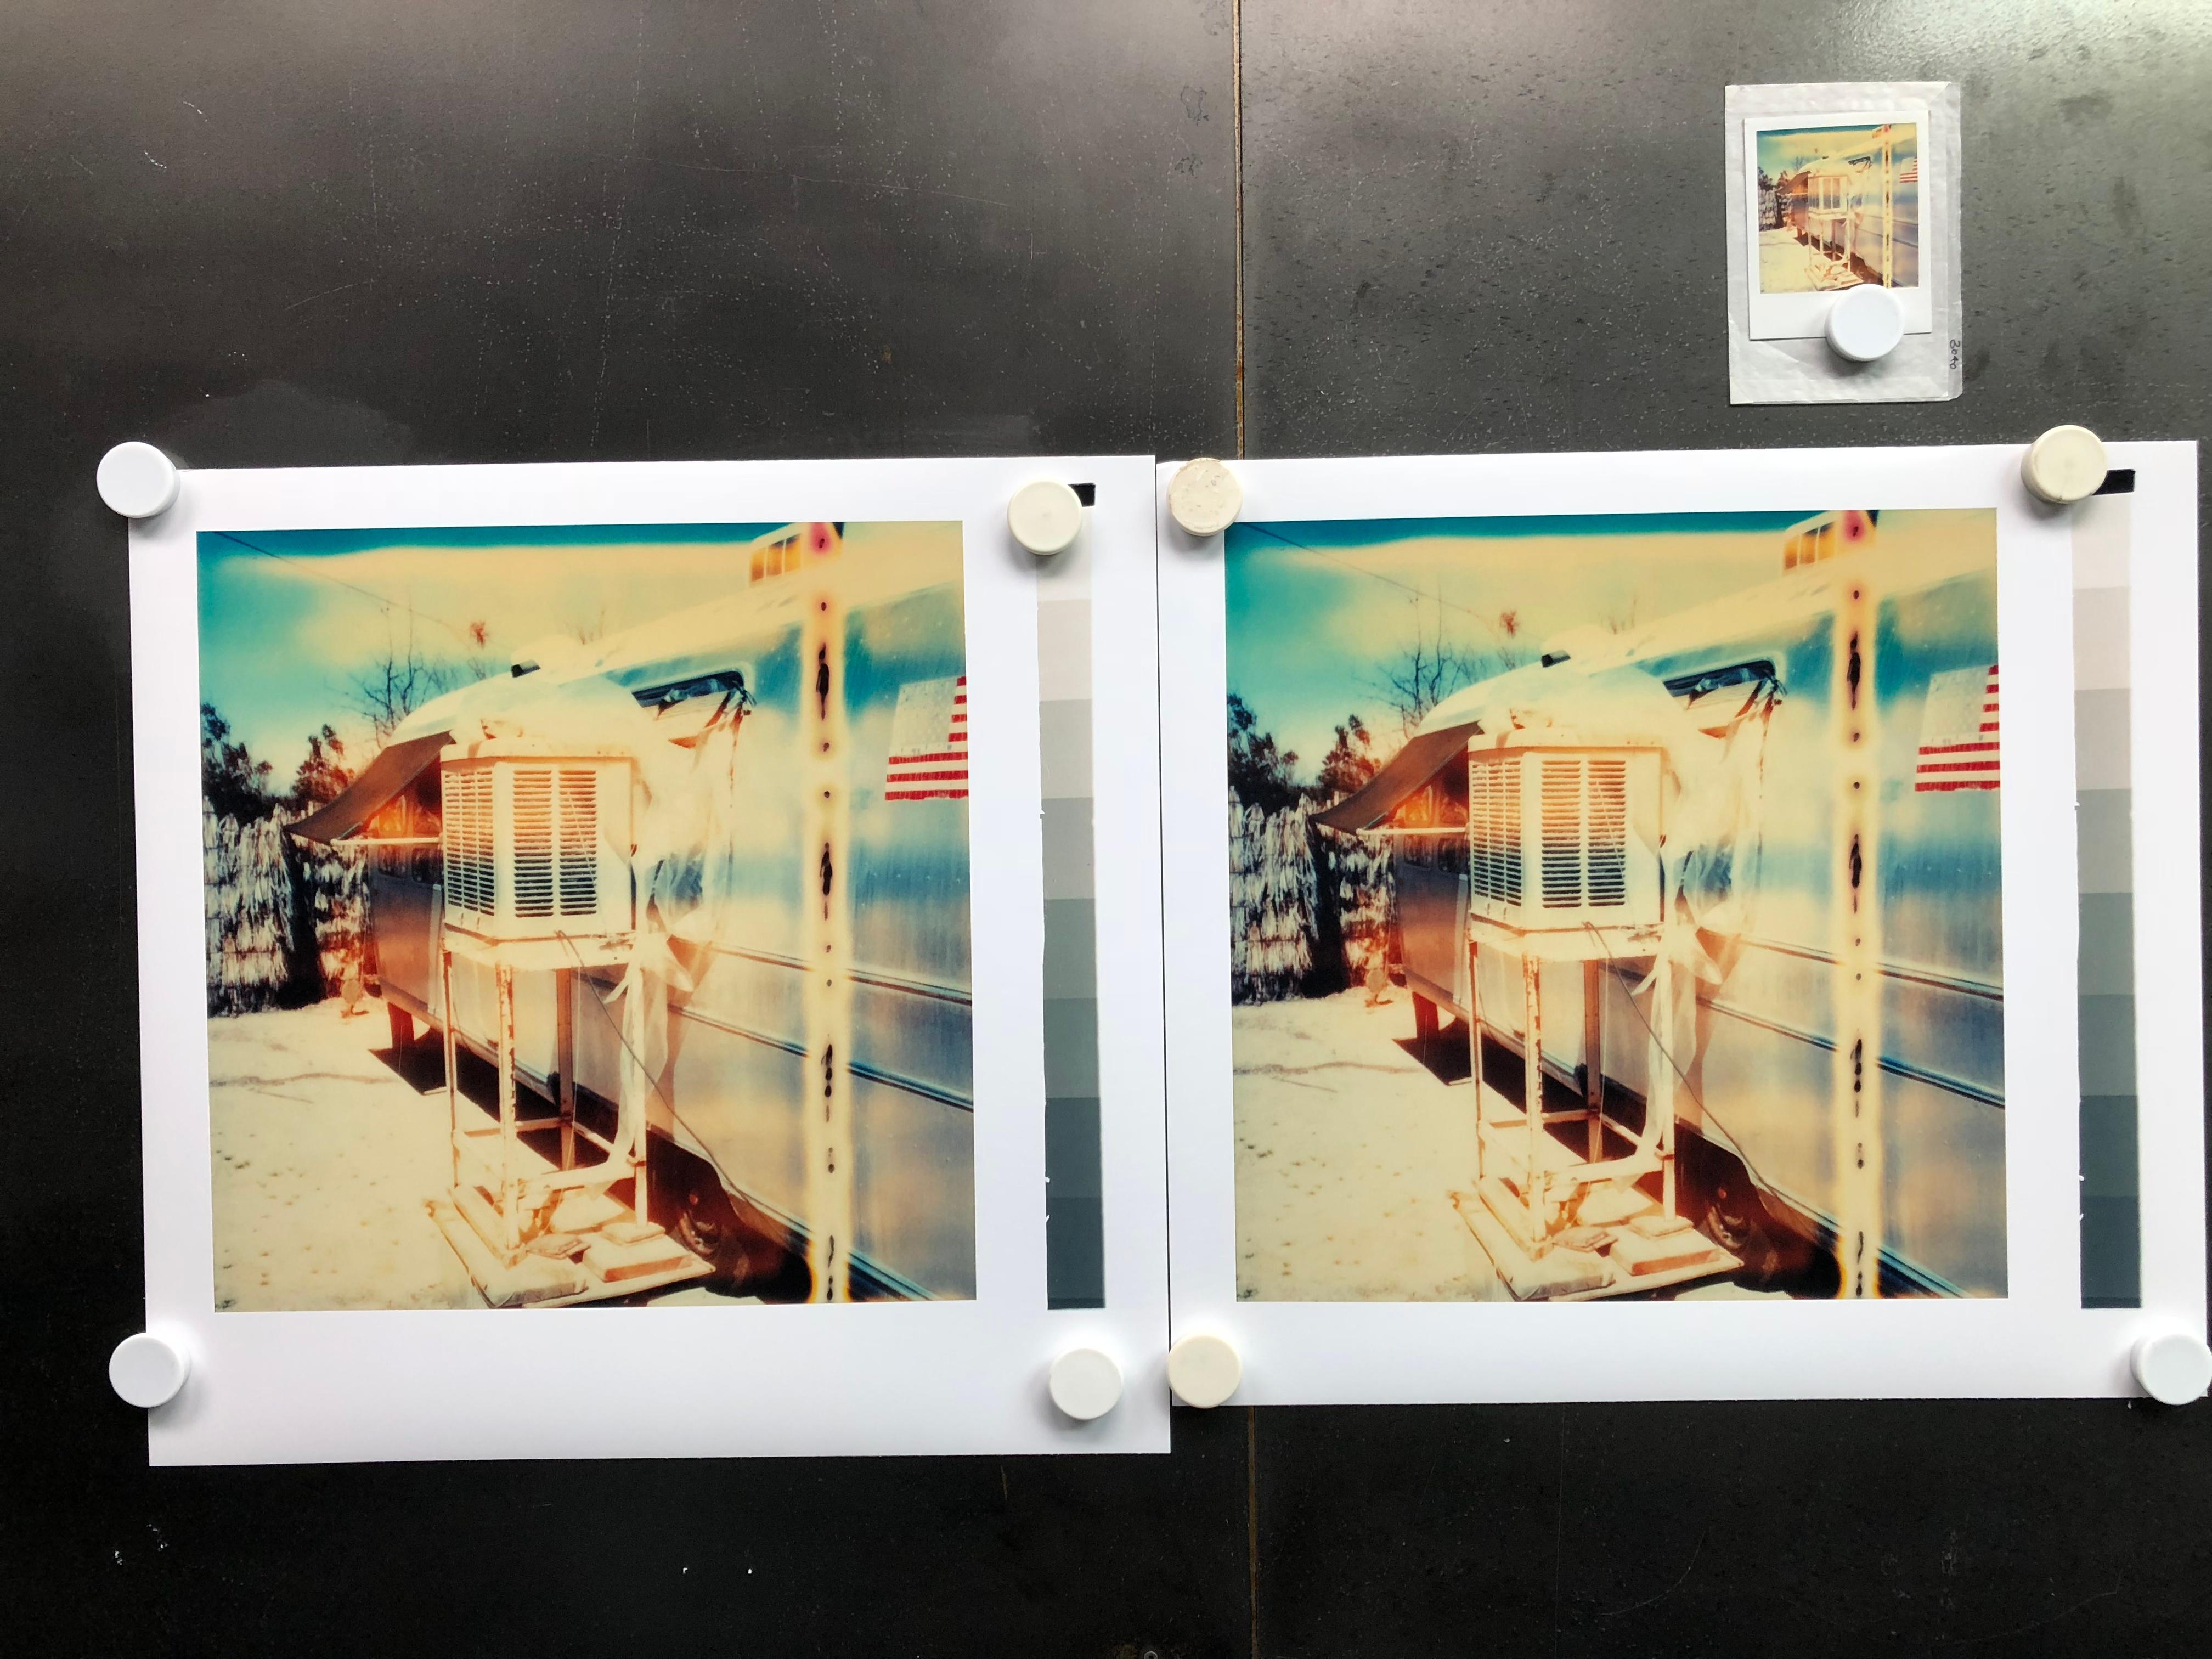 Der Tausendjährige Falke (Sidewinder) - 2005

38.5x38cm, 
Ausgabe 1/10.  
Analoger C-Print, von der Künstlerin handgedruckt auf Fuji Crystal Archive Papier, basierend auf der Polaroid.  
Künstlerinventar 3040.01. 
Unterschriftenlabel und Zertifikat.